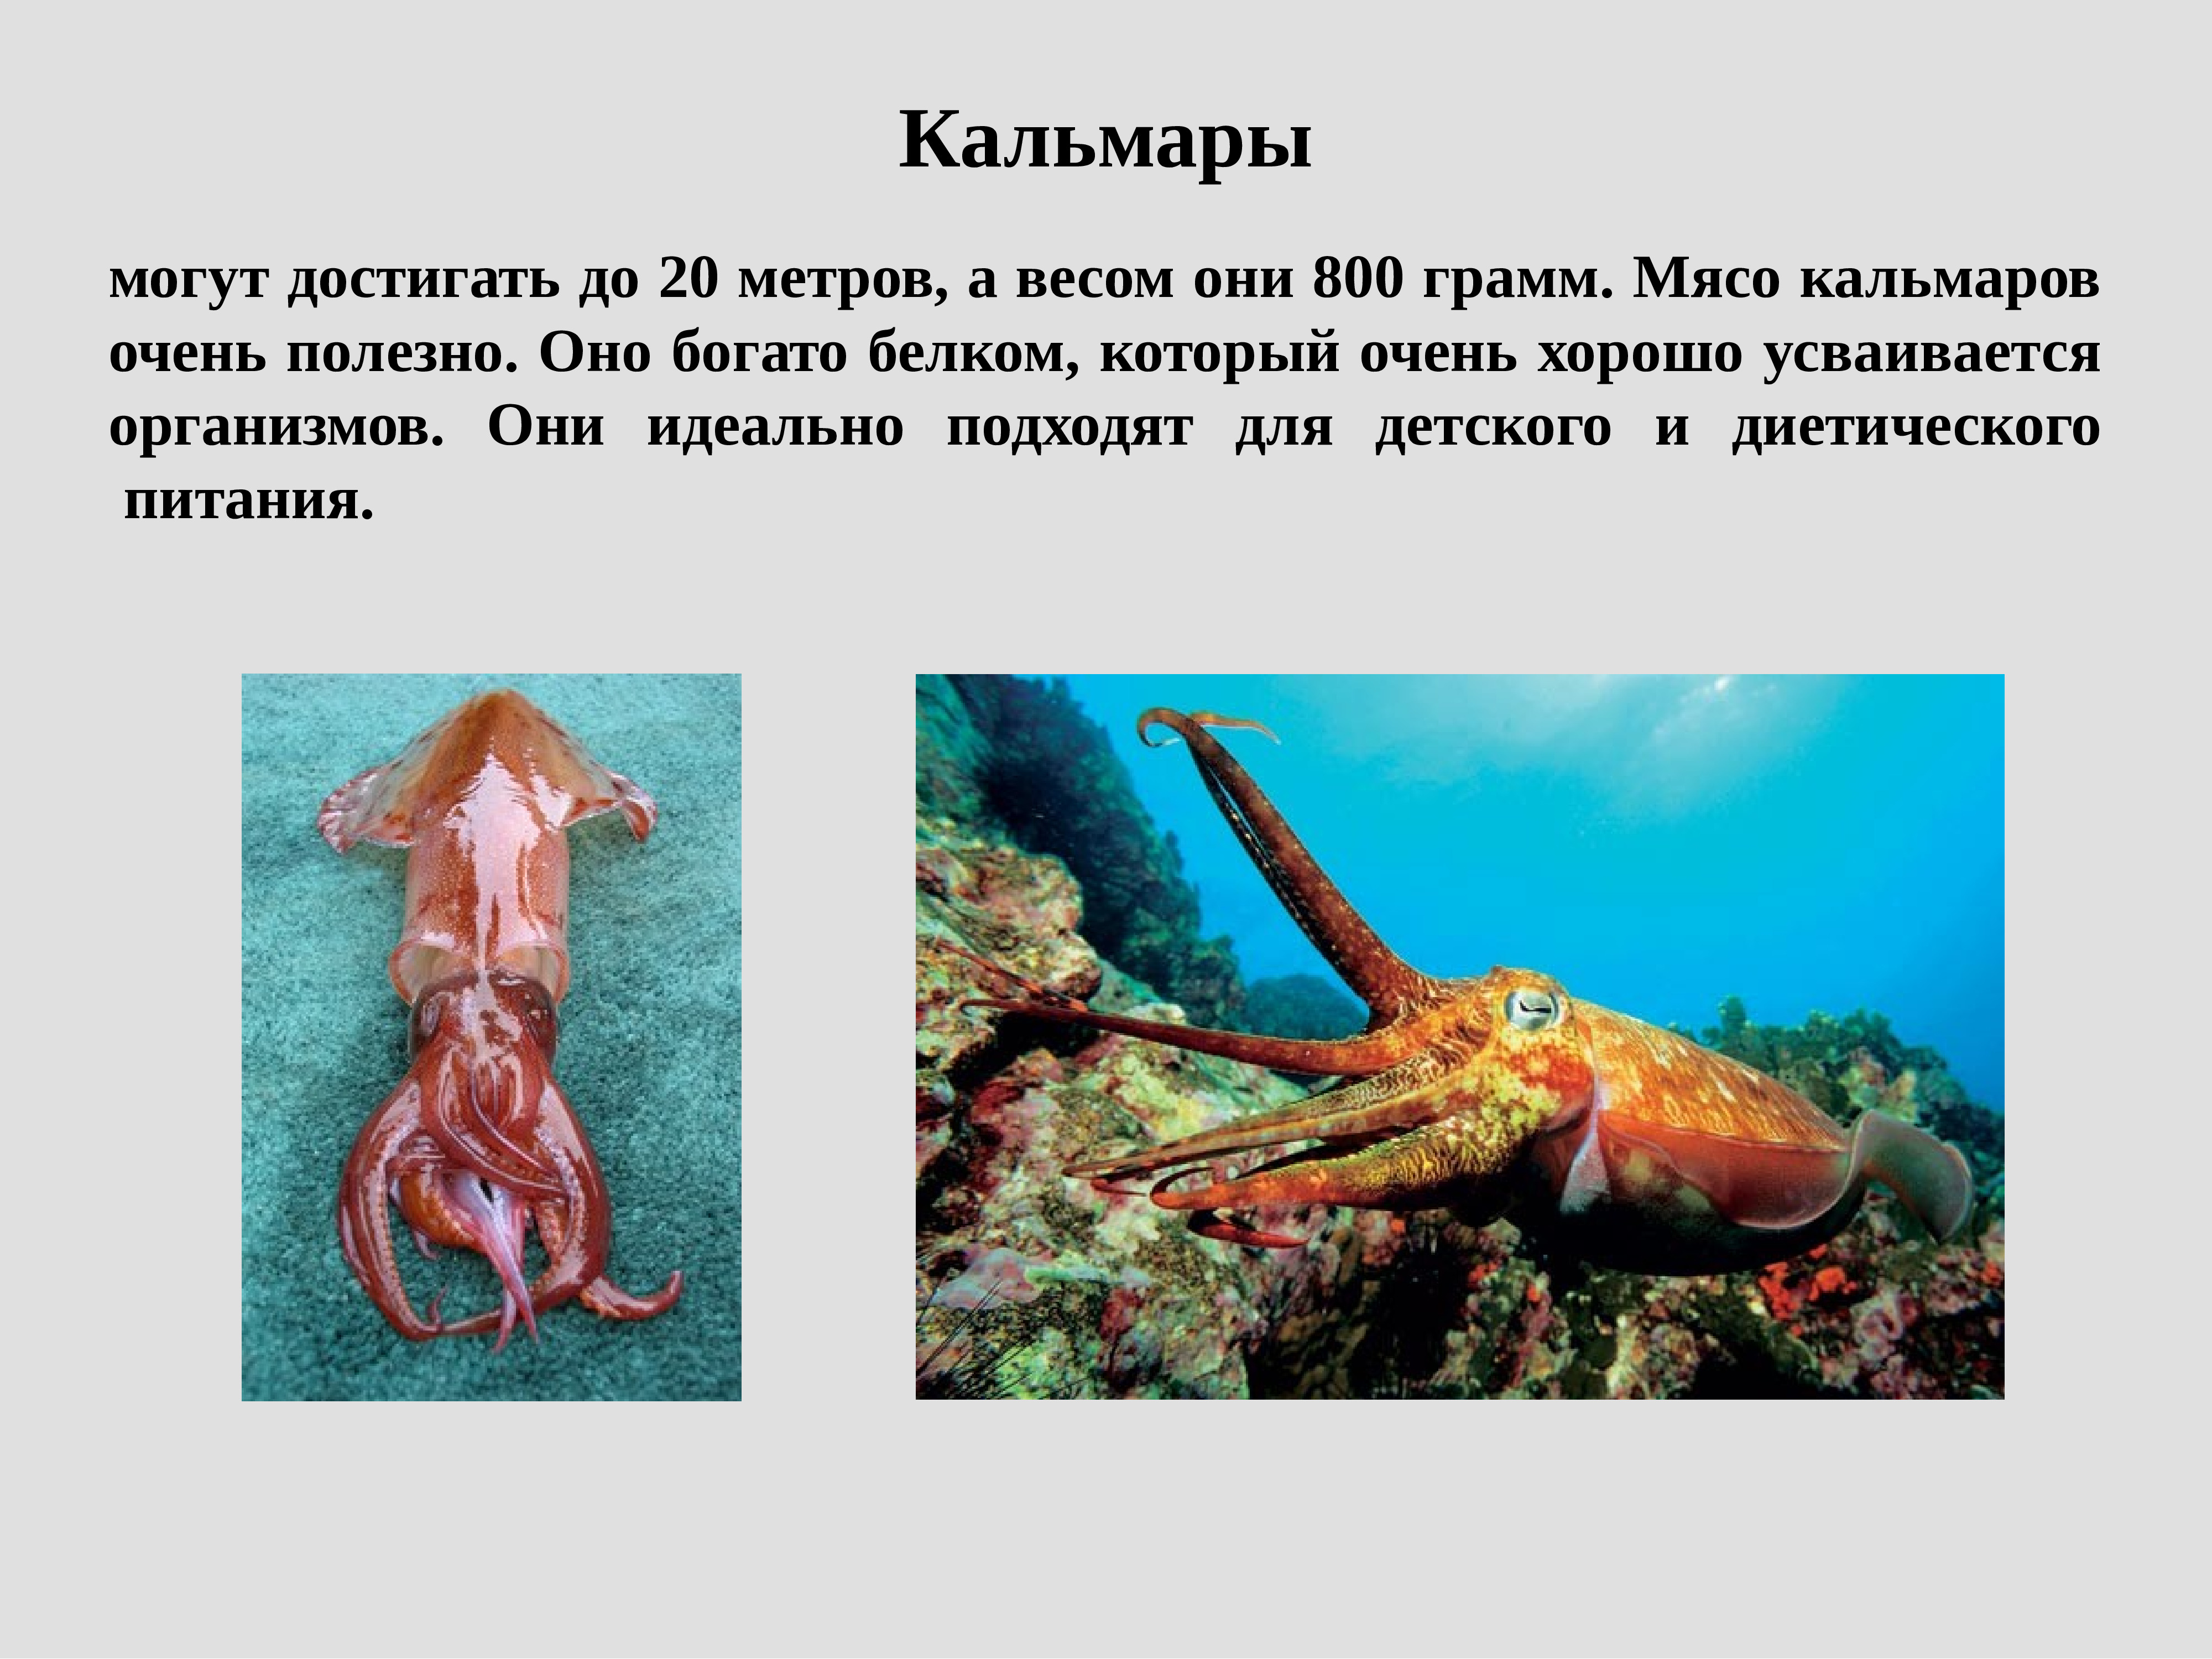 К какой группе организмов относится креветка. Презентация на тему морепродукты. Презентация на тему кальмары. Презентация дары моря. Краткая информация о кальмаре.